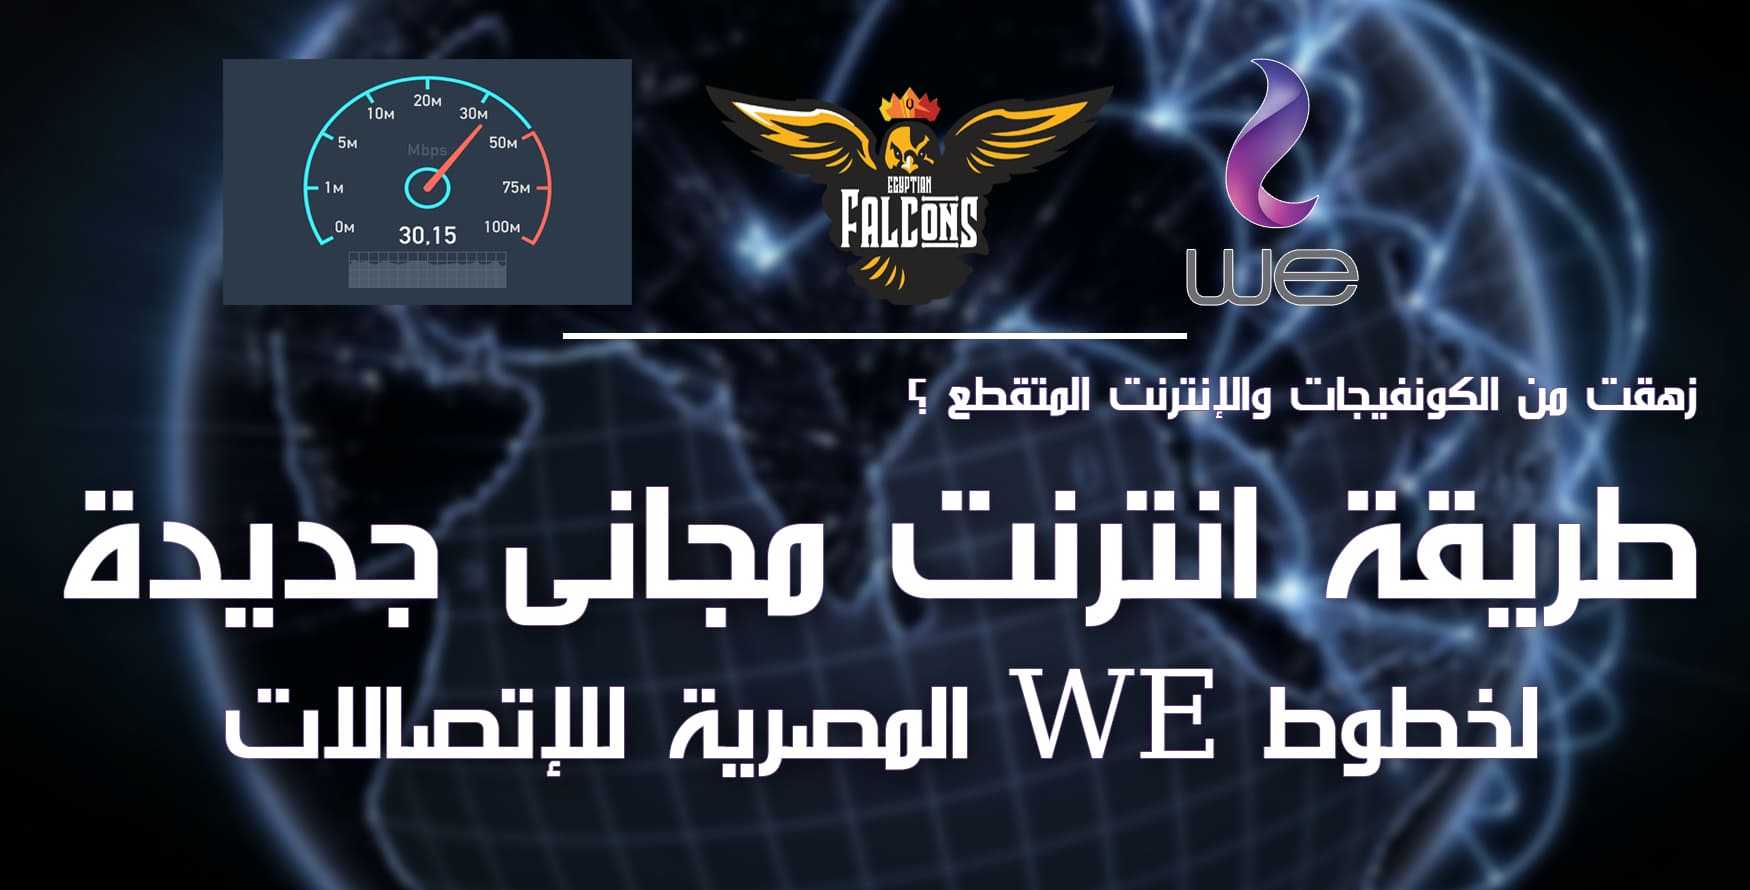 طريقة انترنت ببلاش جديدة لخطوط WE المصرية للاتصالات بدون رصيد وبدون باقة